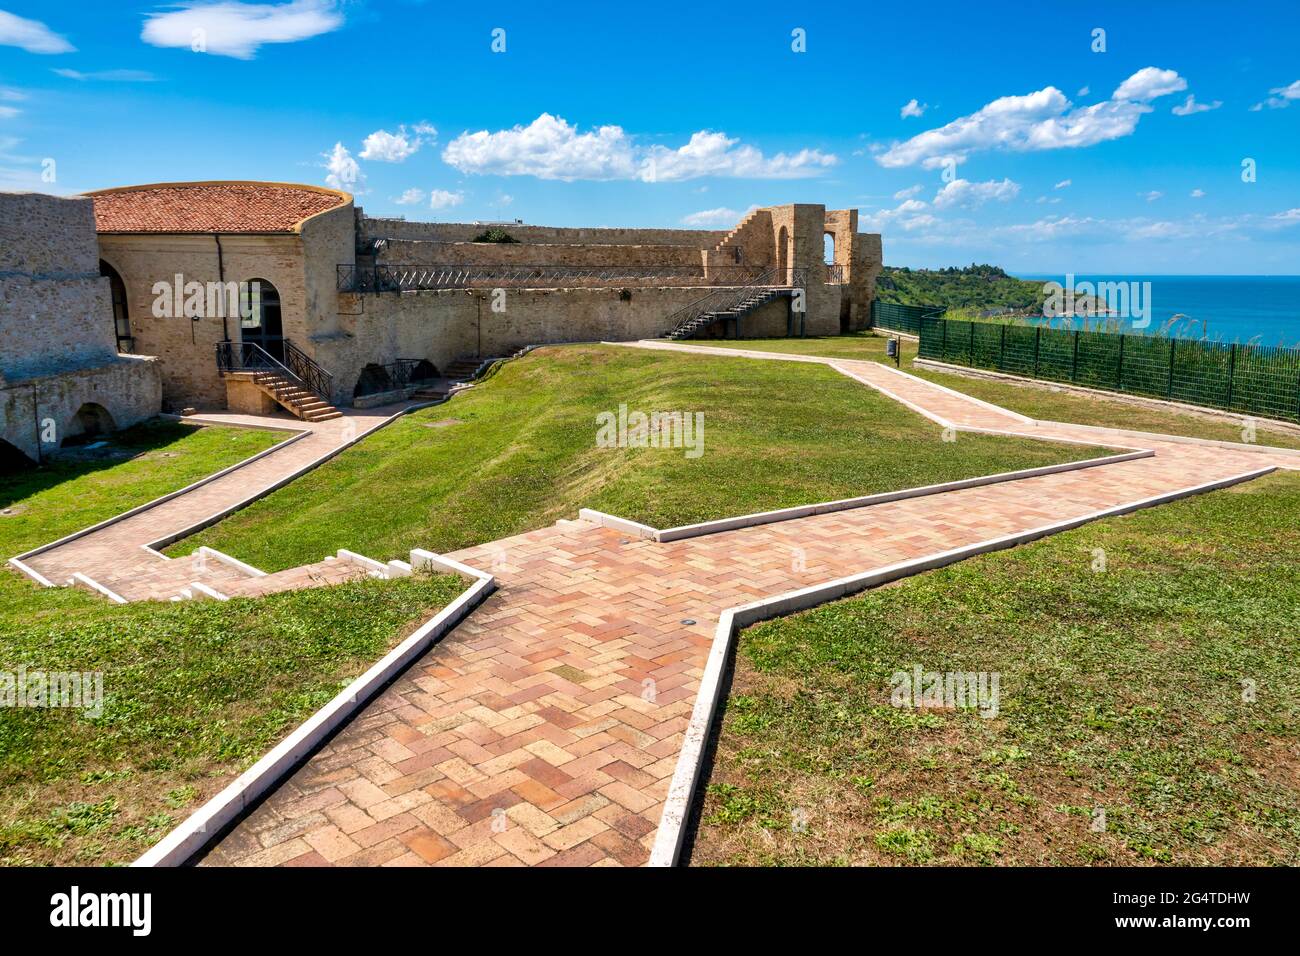 Intérieur du Castello Aragonese, Ortona, Italie Banque D'Images